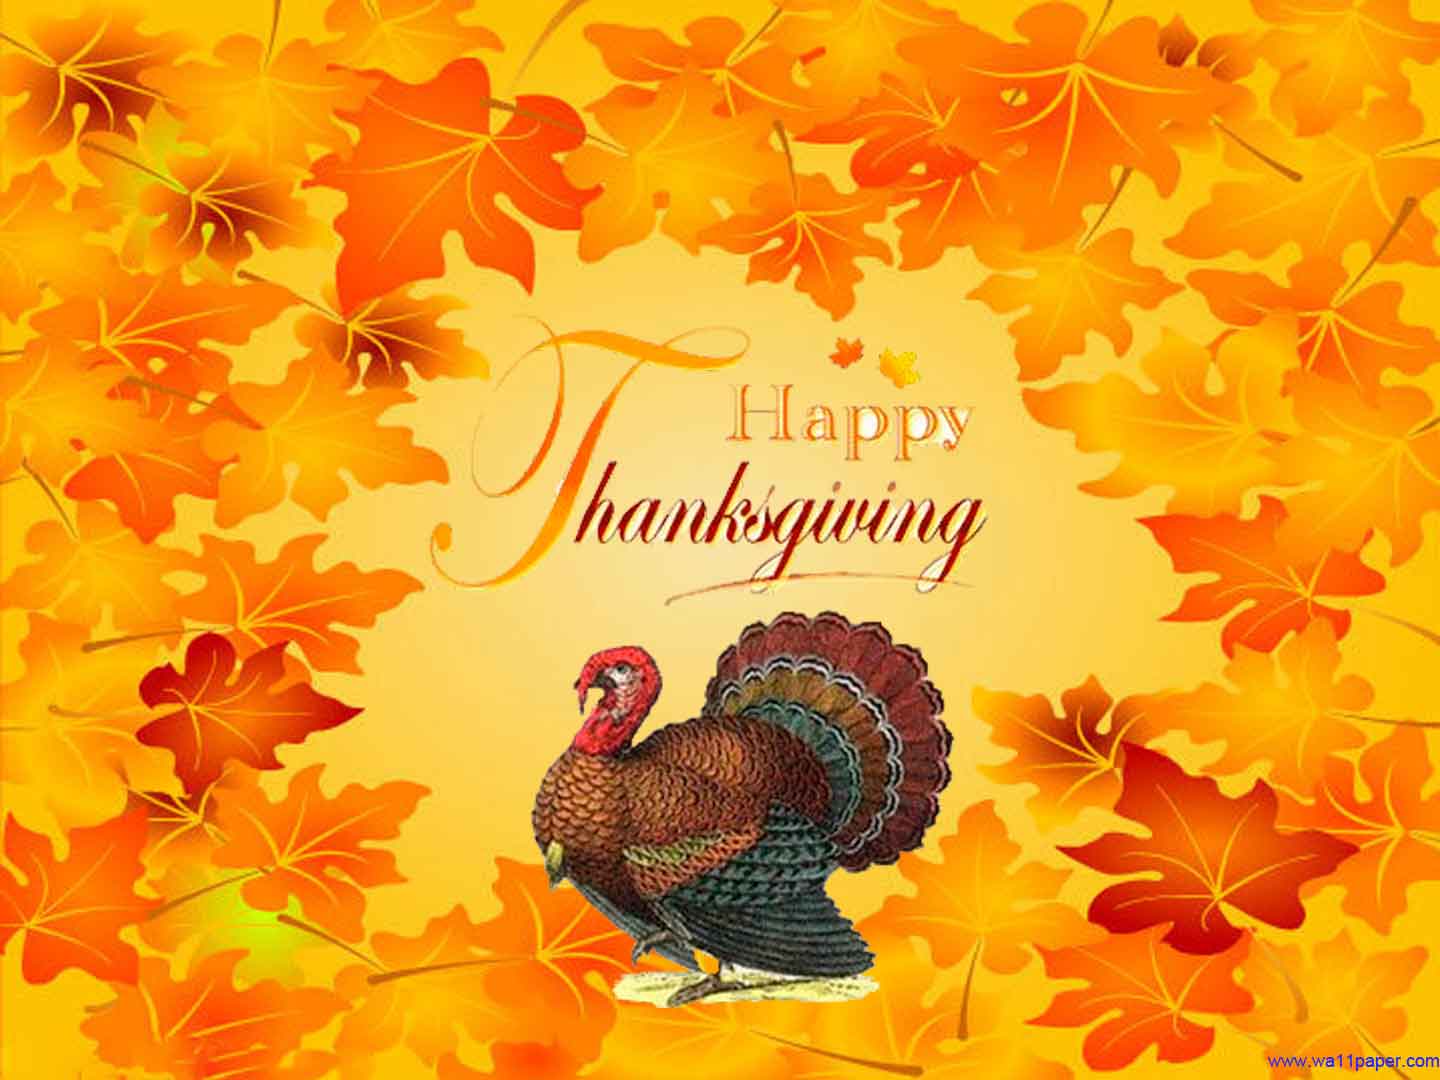 Happy Thanksgiving Desktop Wallpapers Top Free Happy Thanksgiving Desktop Backgrounds Wallpaperaccess